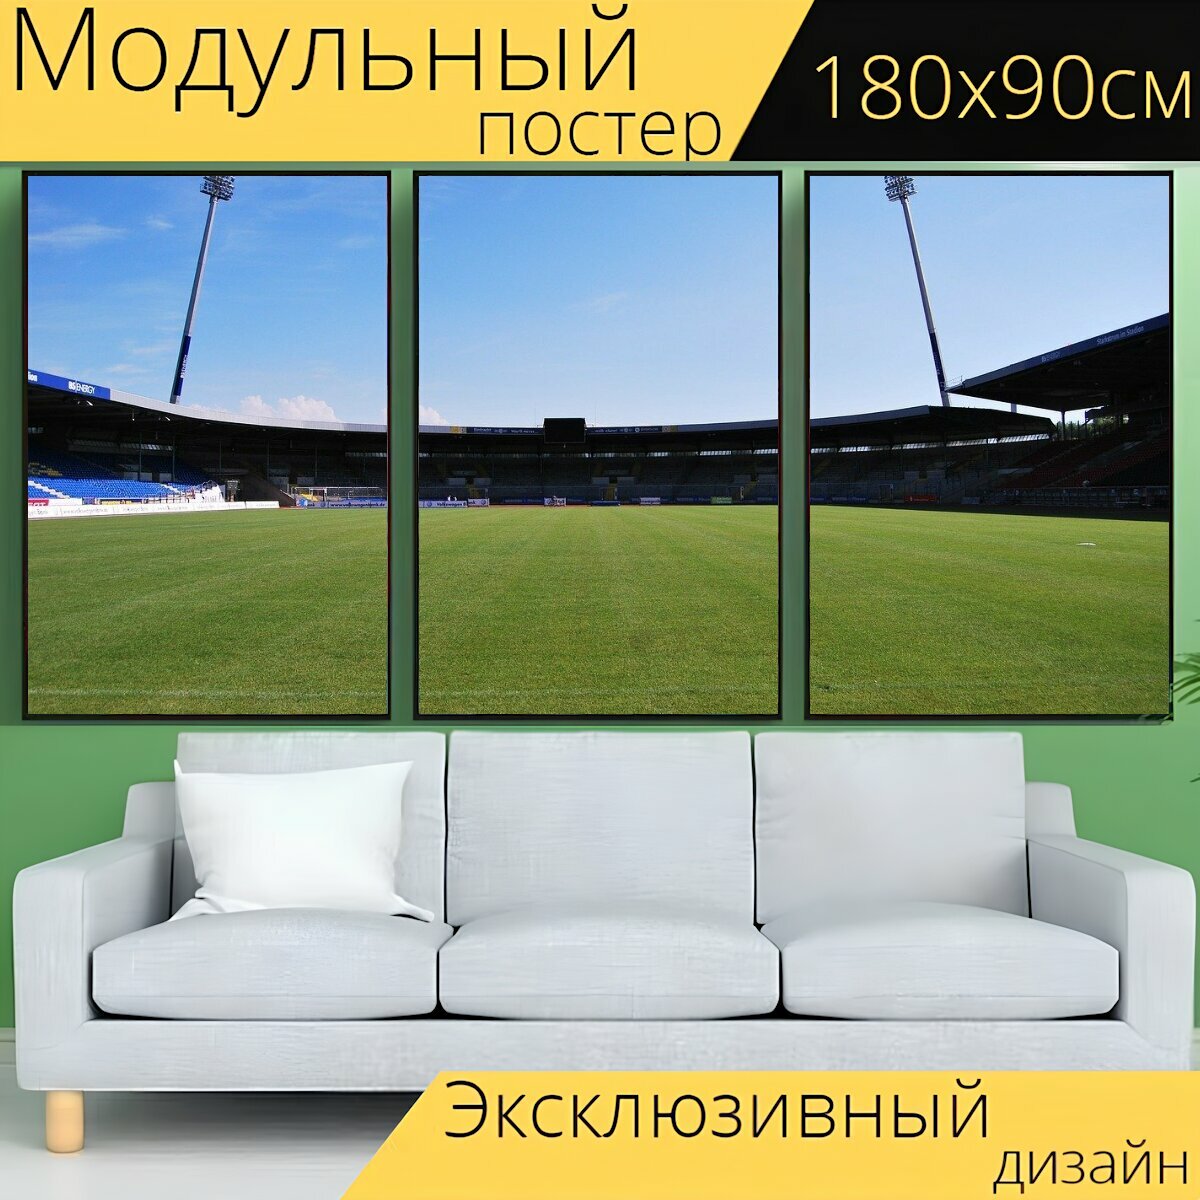 Модульный постер "Футбольное поле, арена, виды спорта" 180 x 90 см. для интерьера